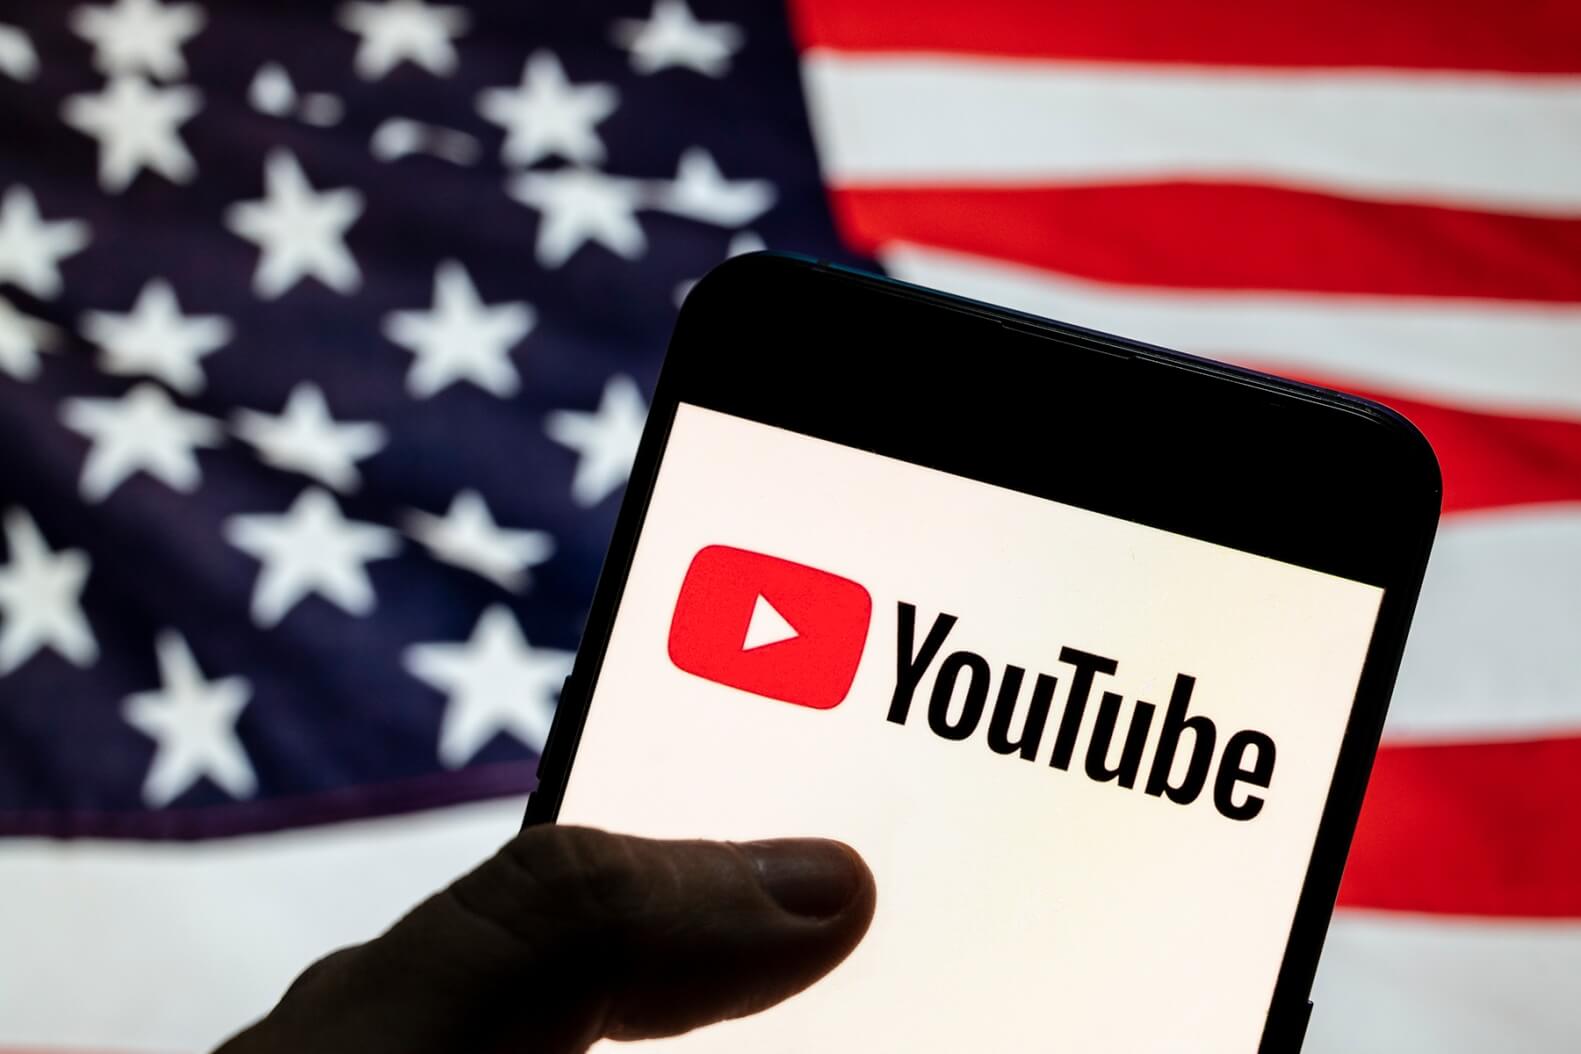 การเปลี่ยนแปลงนโยบายของ YouTube: การอ้างสิทธิ์อันเป็นเท็จเกี่ยวกับการเลือกตั้งประธานาธิบดีสหรัฐฯ ได้รับอนุญาต